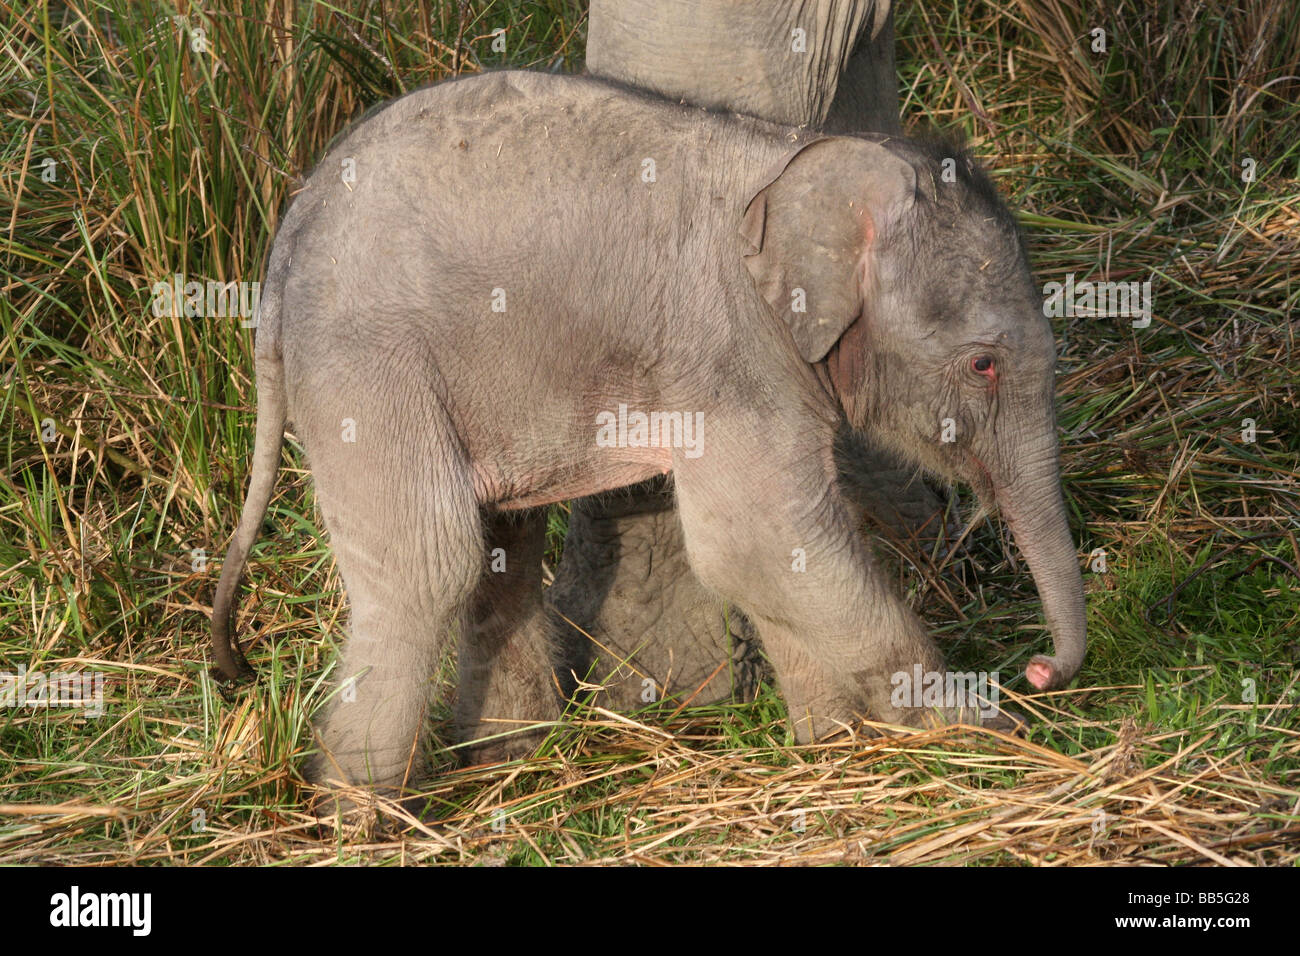 Three Day Old Indian Elephant Elephas maximus indicus Taken In Kaziranga National Park, Assam, India Stock Photo